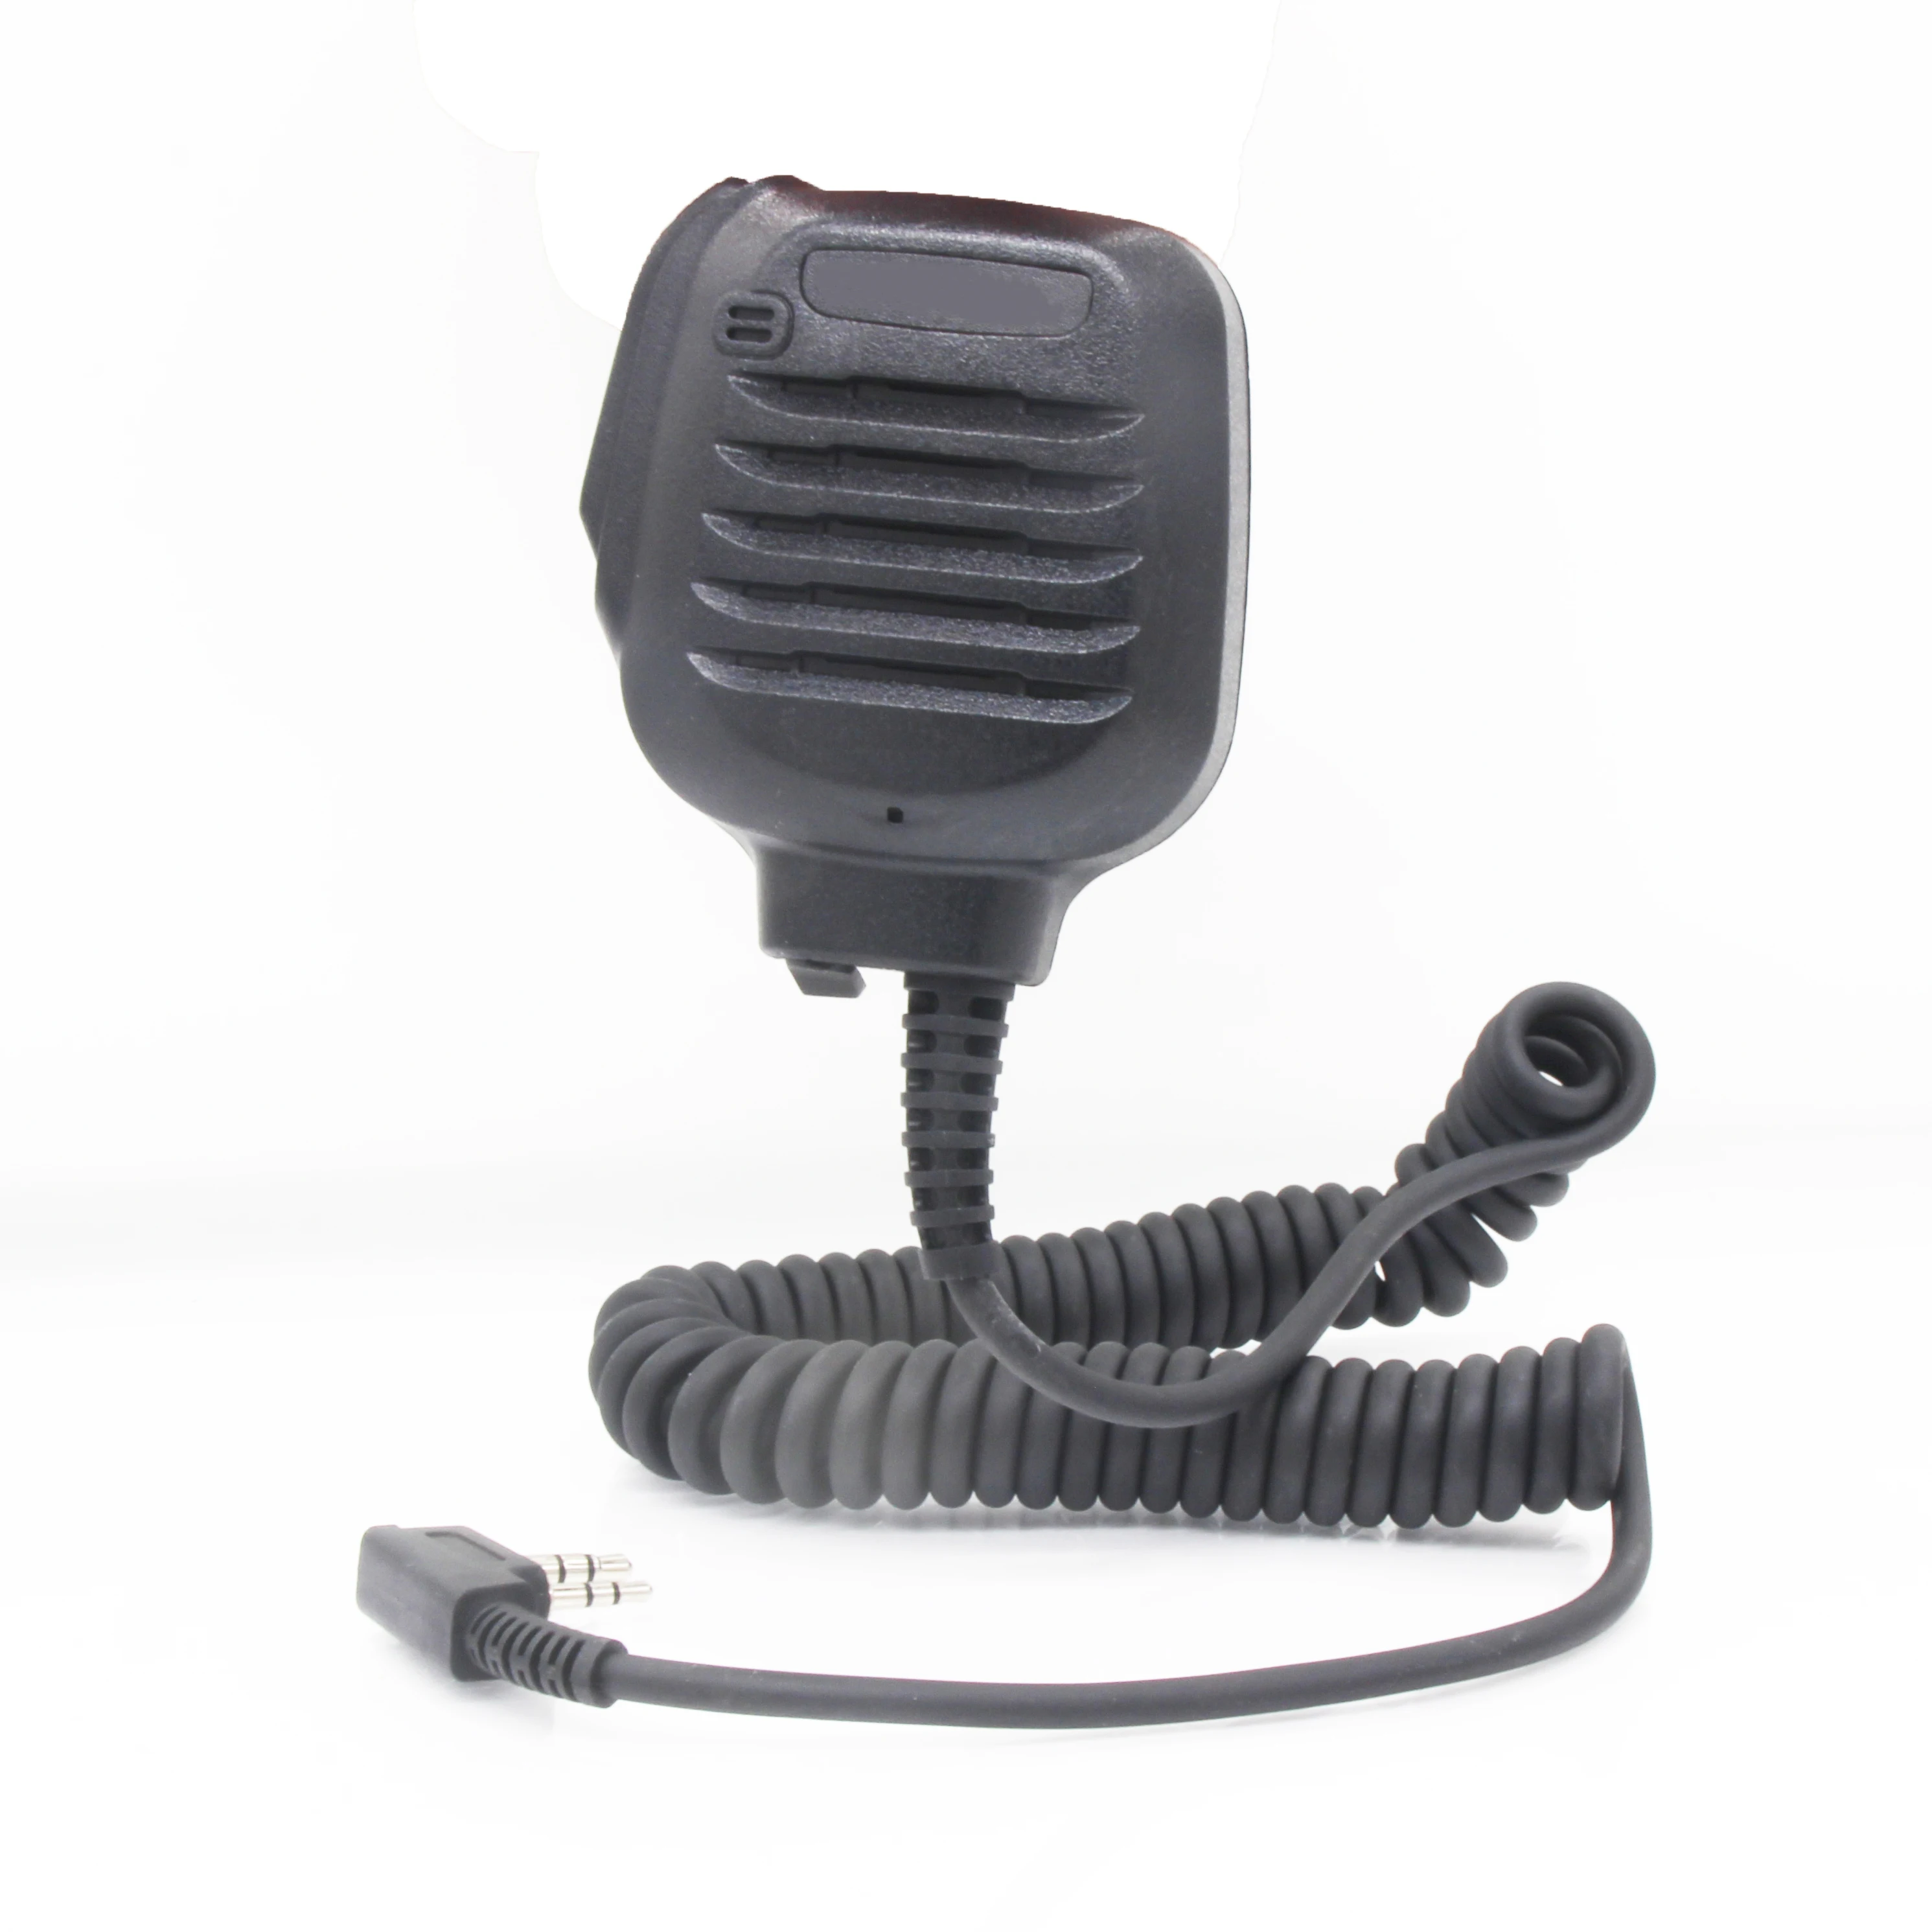 KMC-45 Shoulder Remote Speaker Microphone PTT for Kenwood TK2402 TK3402 TK3312 TK2312 NX220 NX320 NX240 Radio